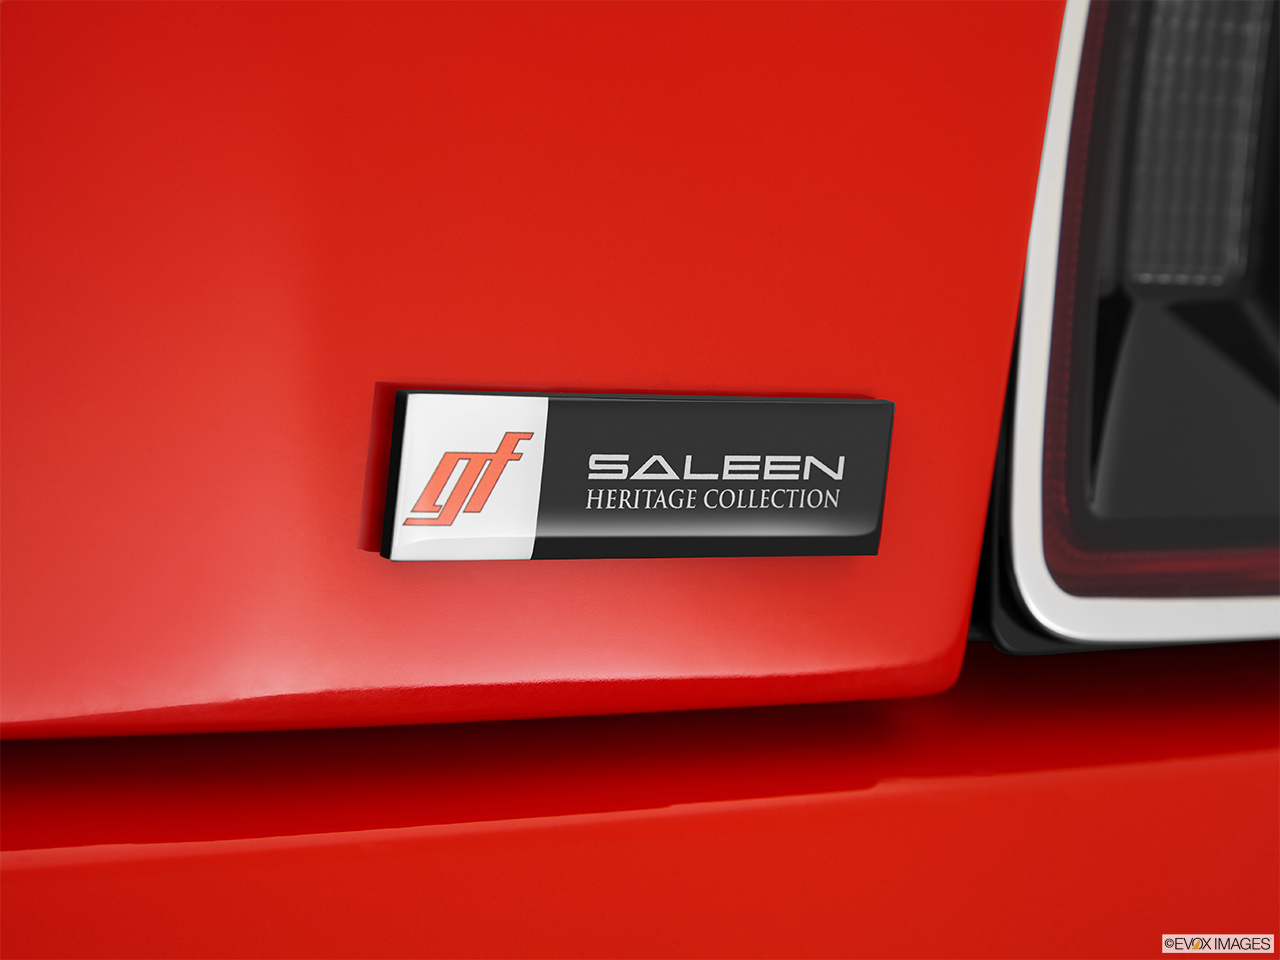 2014 Saleen George Follmer Mustang Base Rear model badge/emblem 